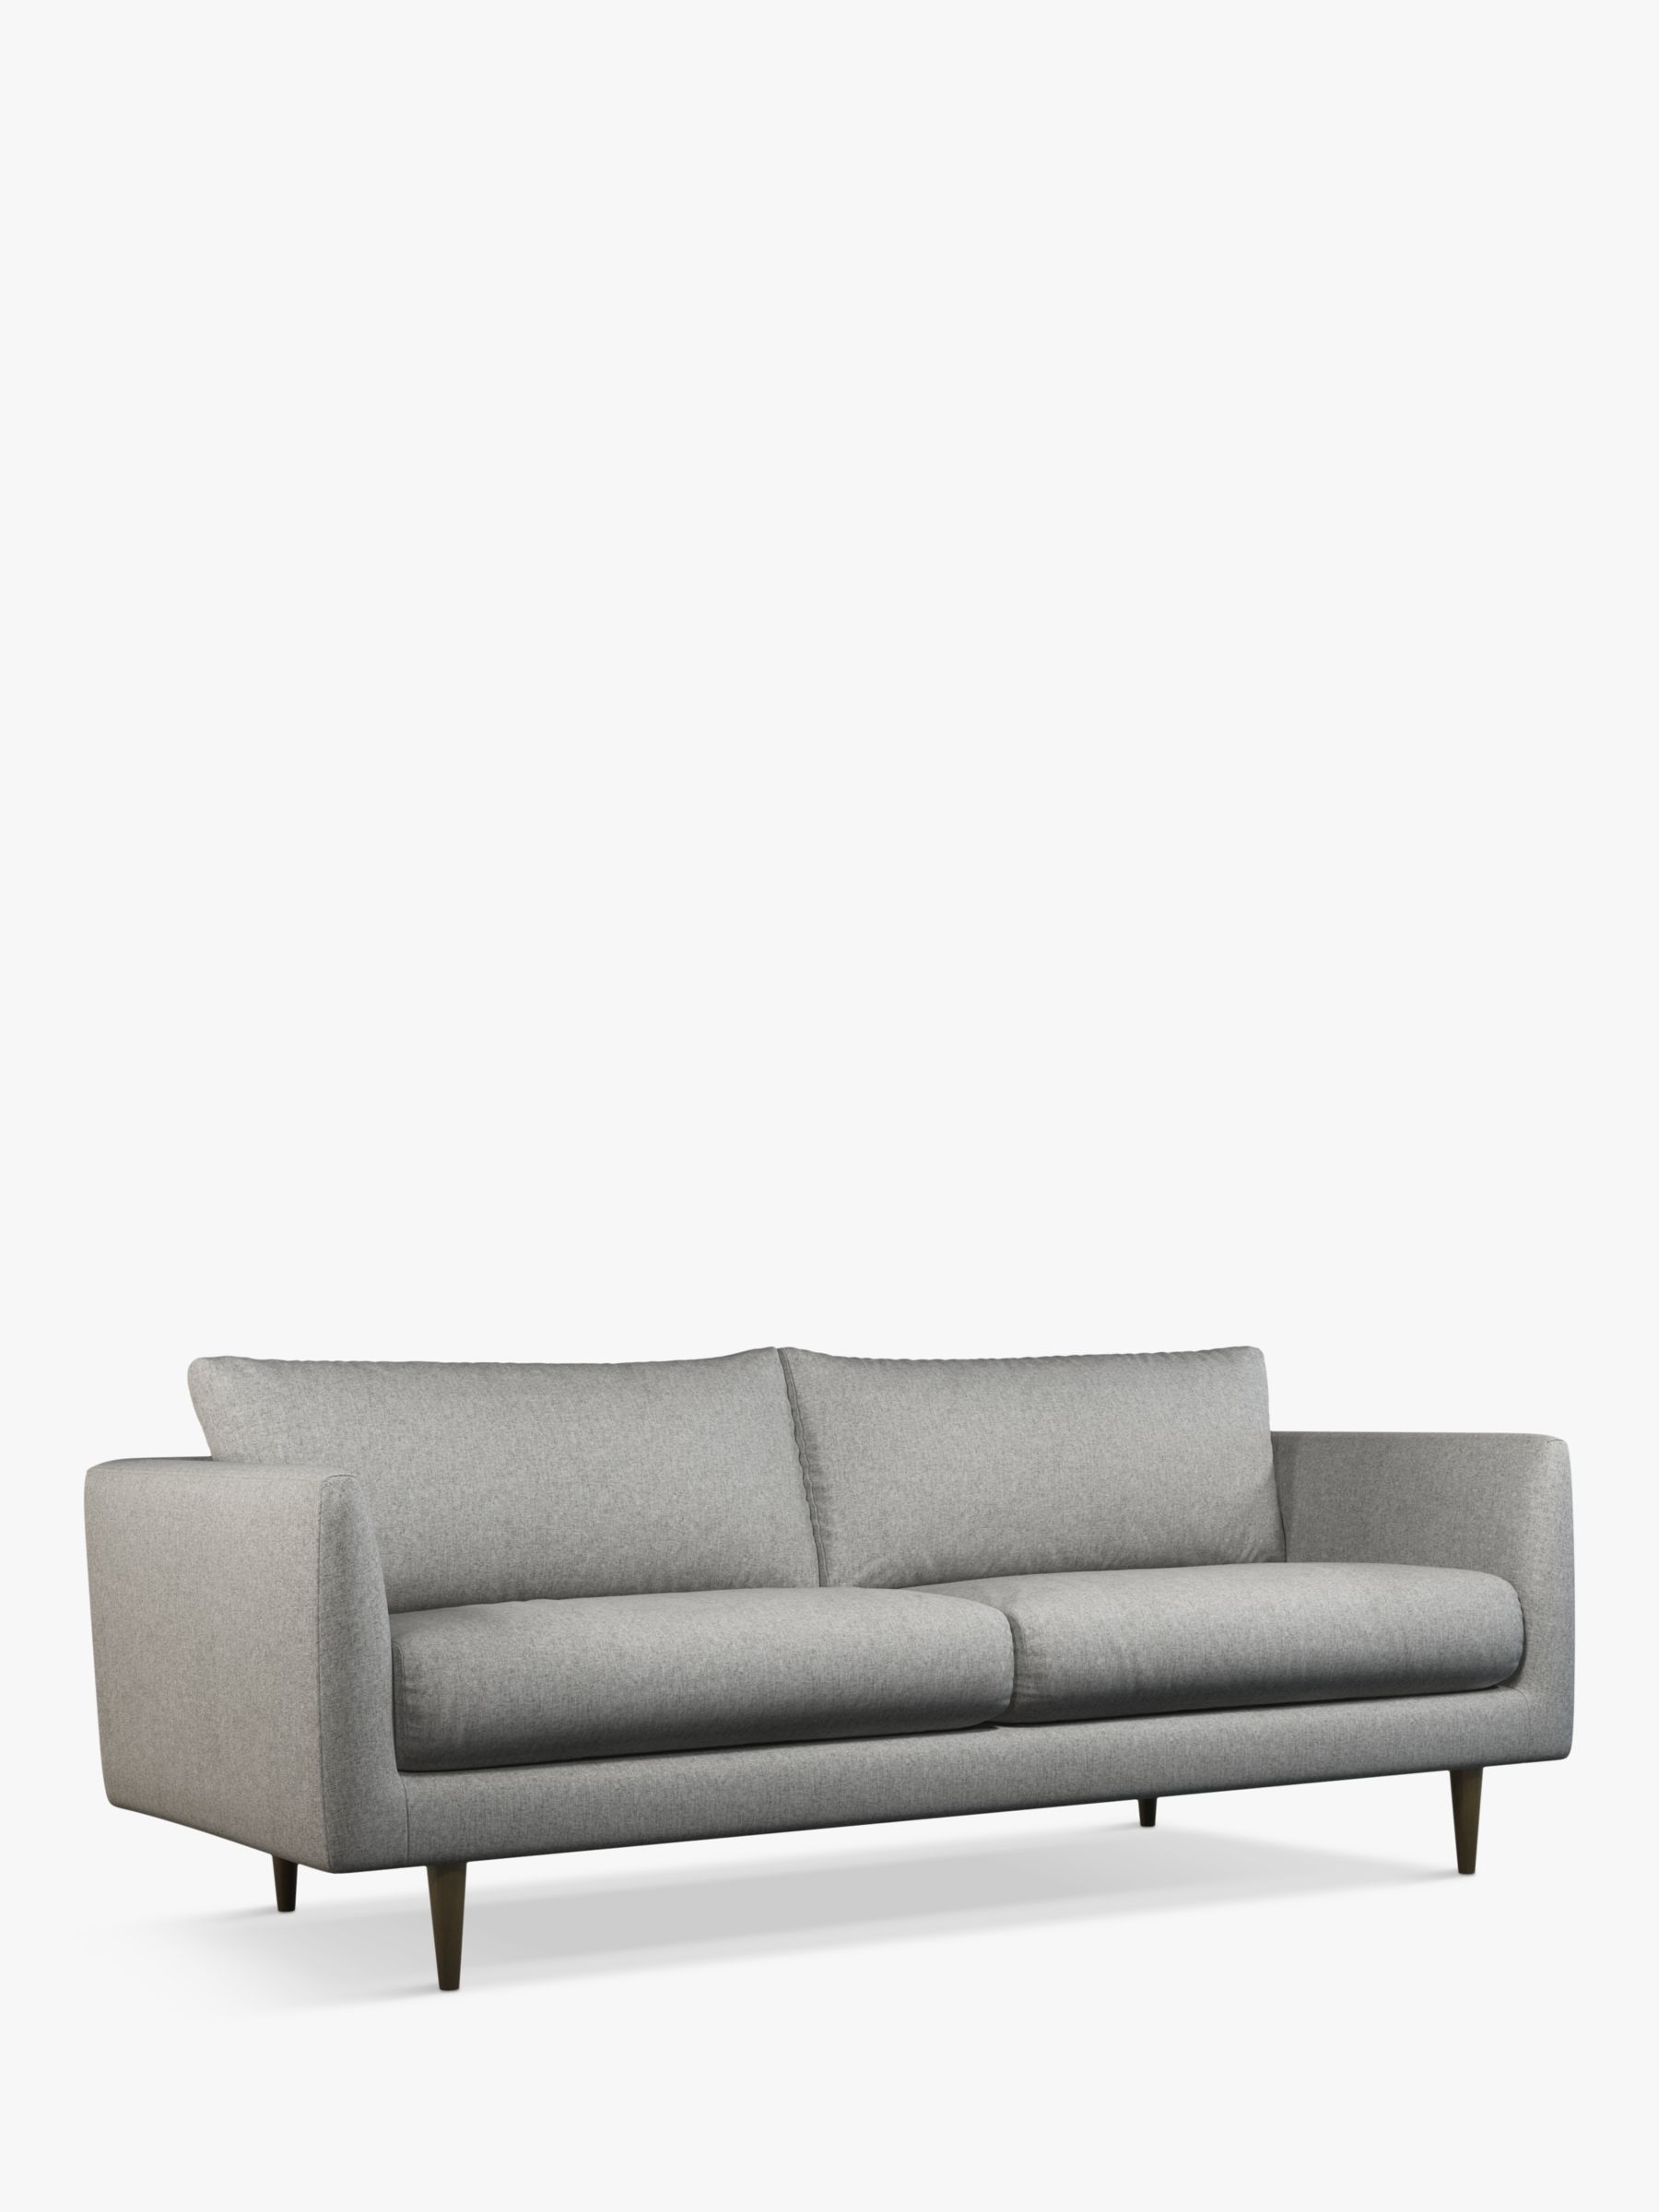 Latimer Range, John Lewis + Swoon Latimer Large 3 Seater Sofa, Cinder Grey Wool